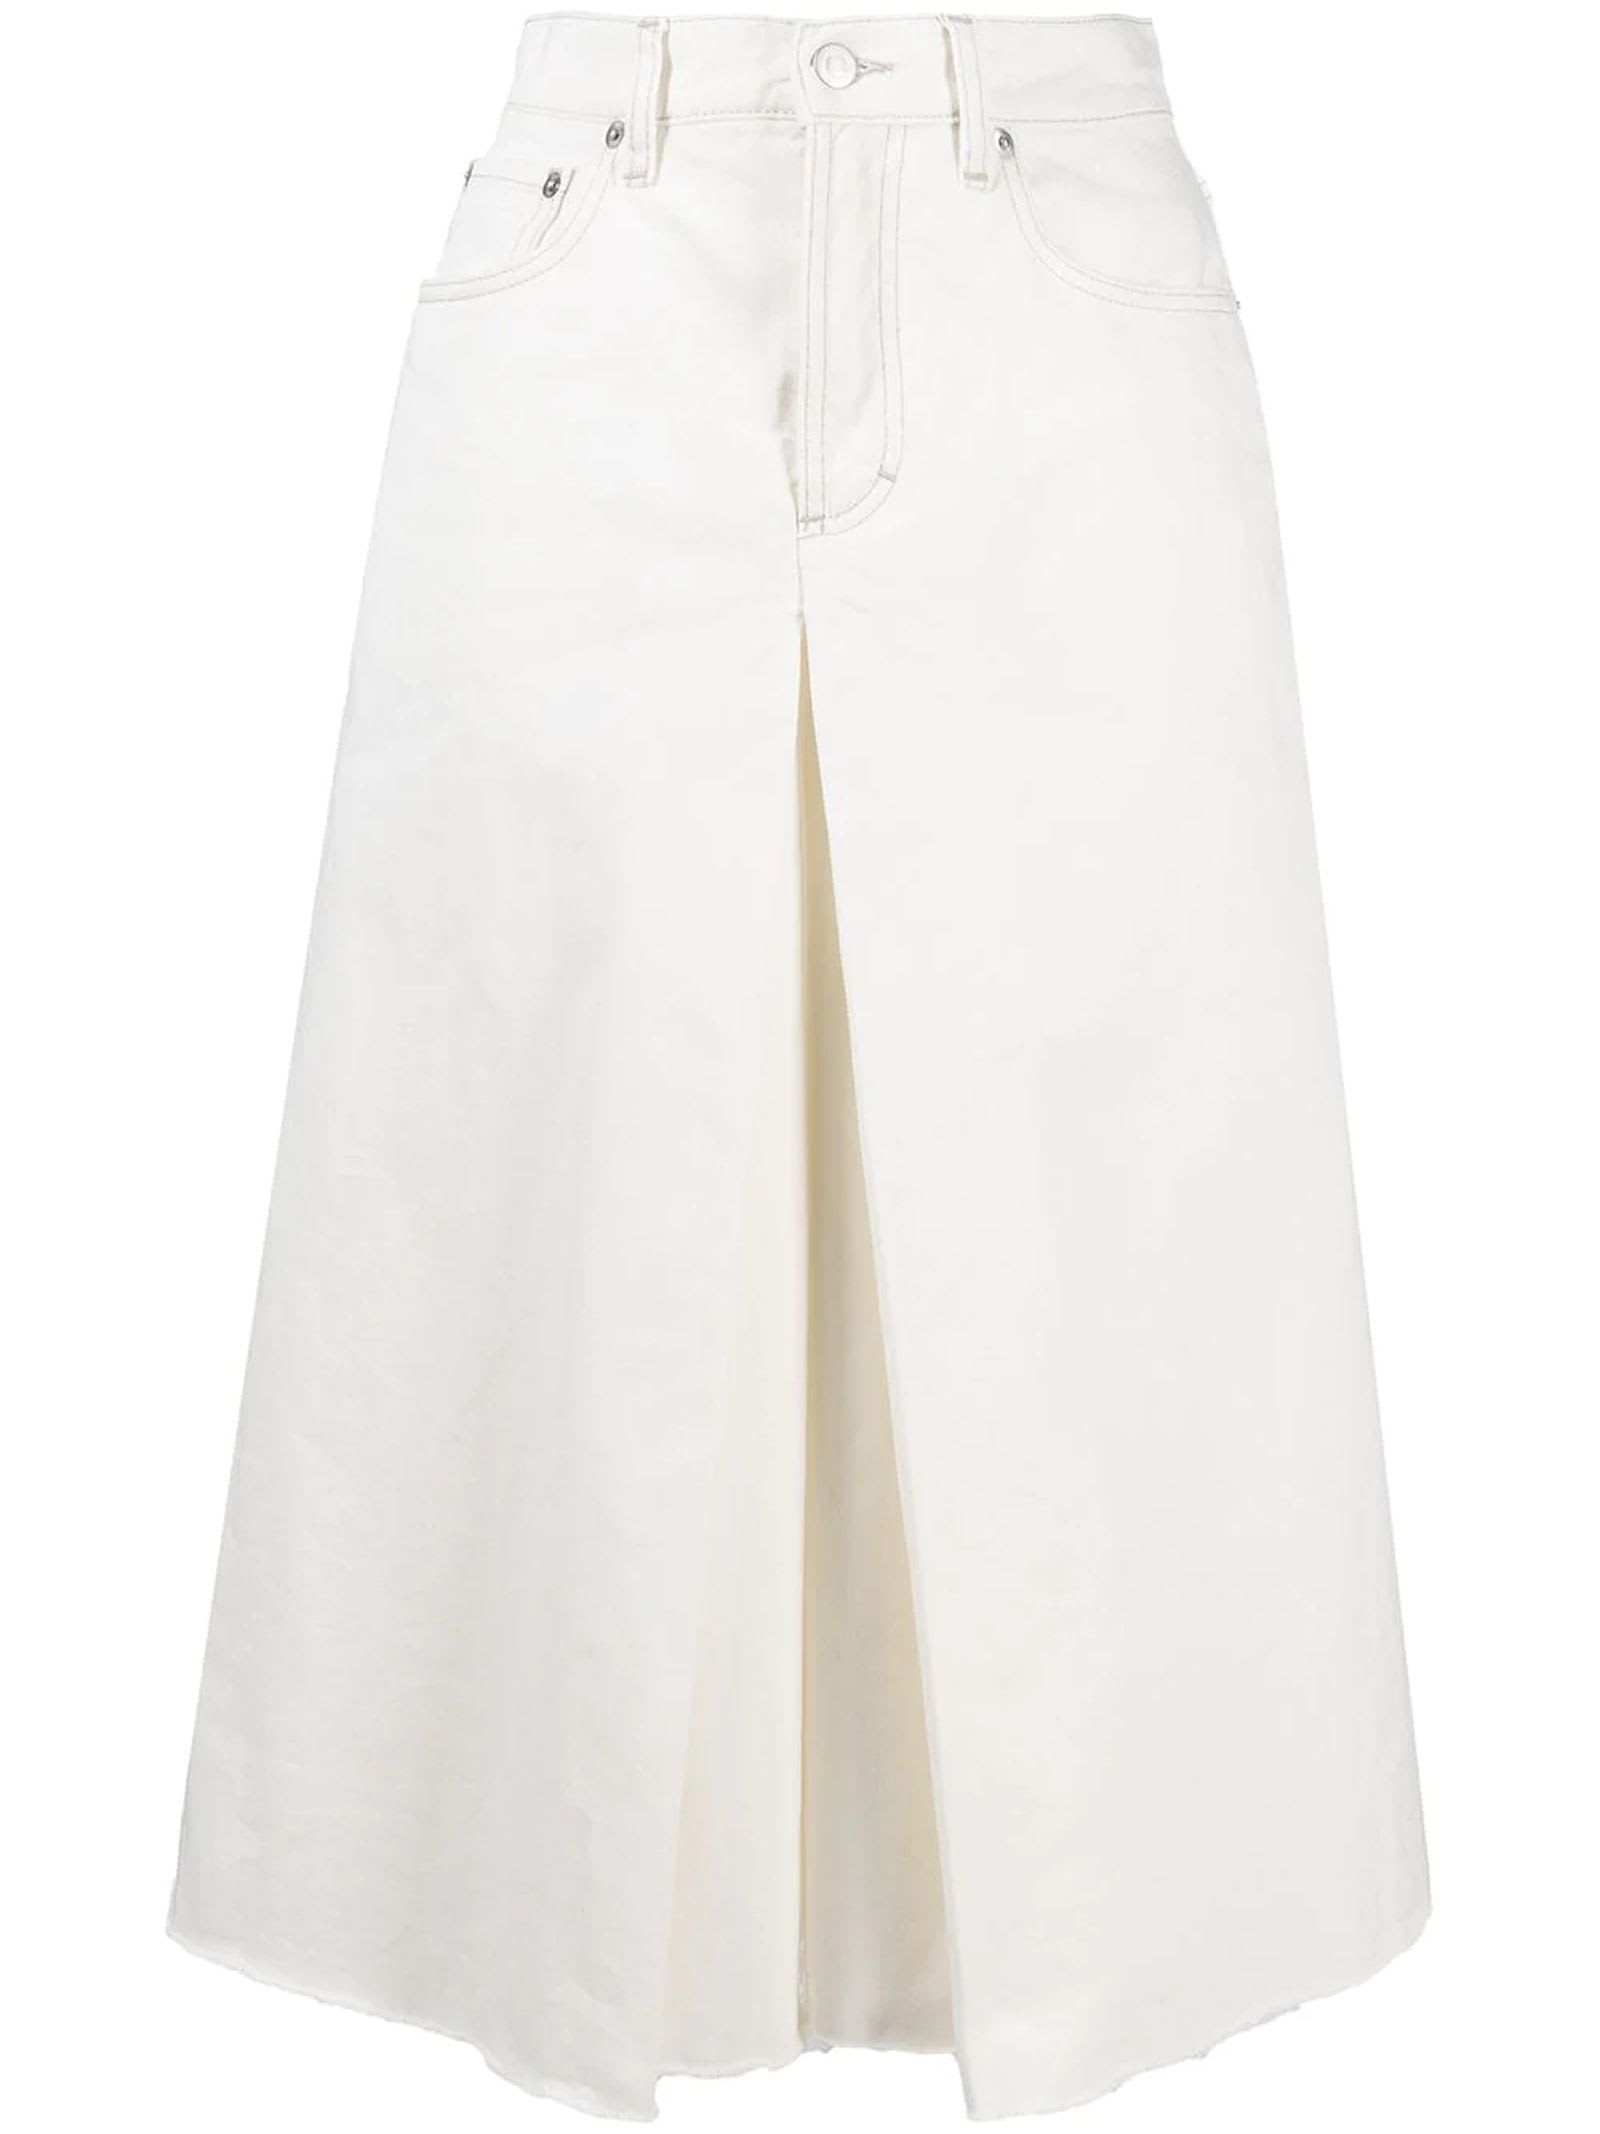 Maison Margiela White Cotton Blend Denim Shorts